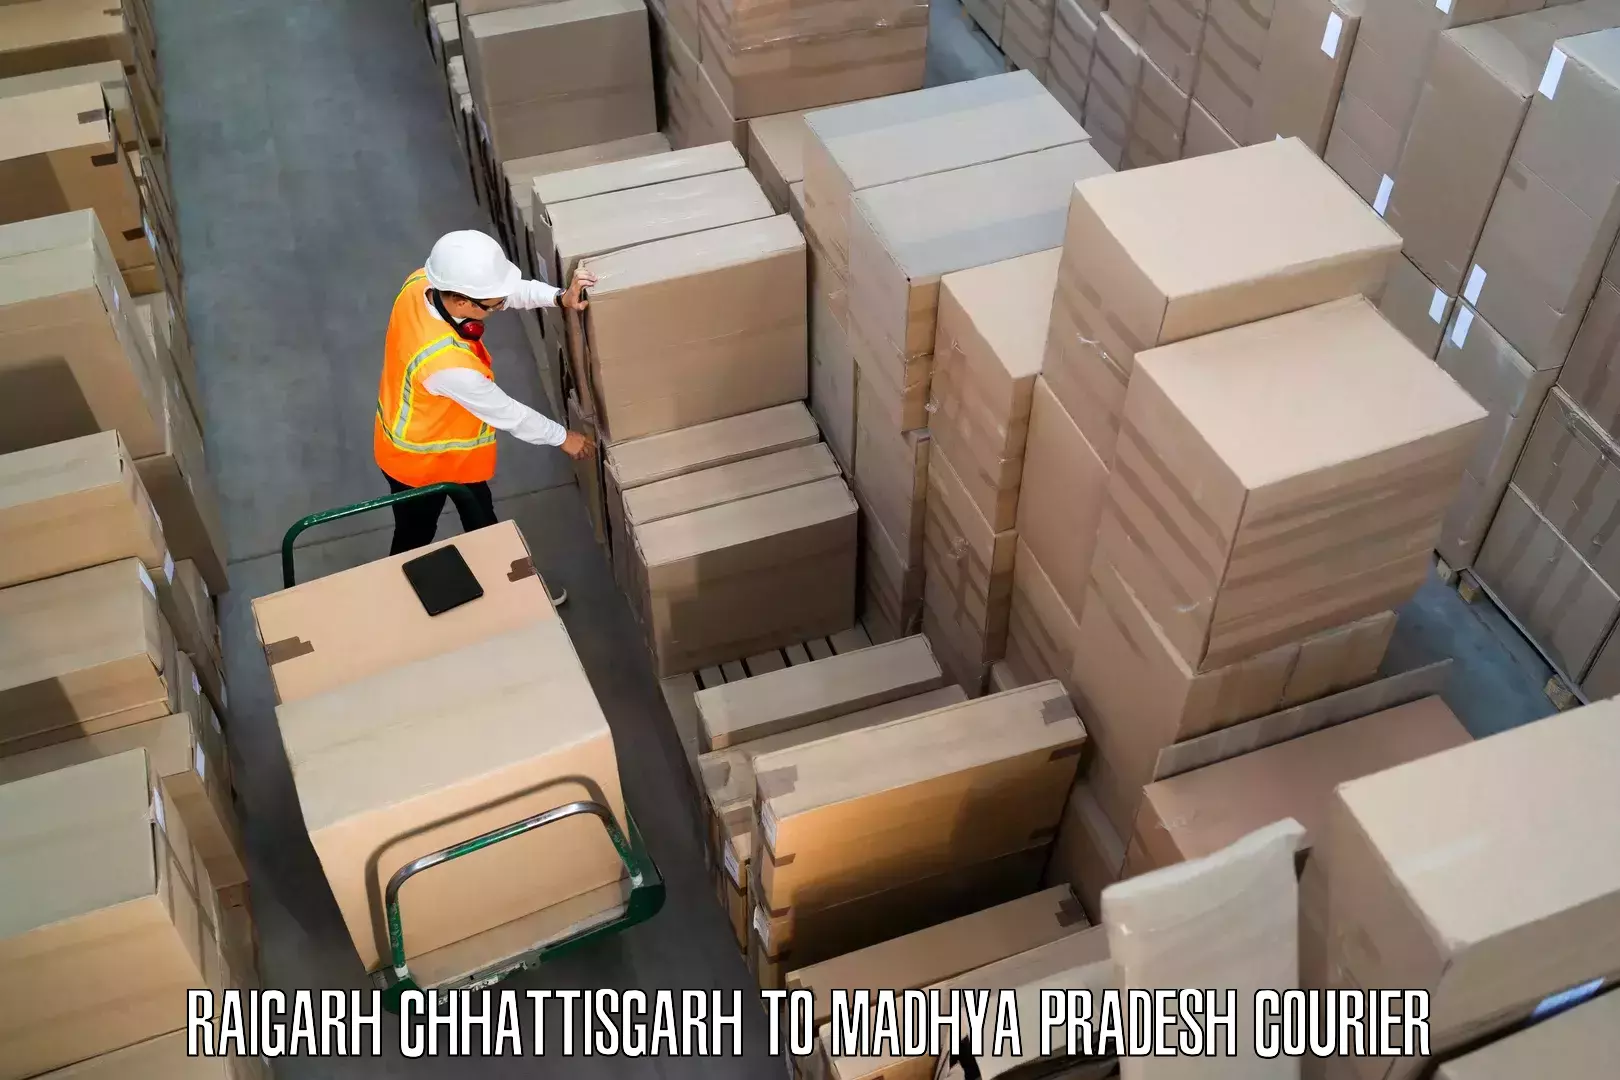 Furniture delivery service Raigarh Chhattisgarh to Bareli